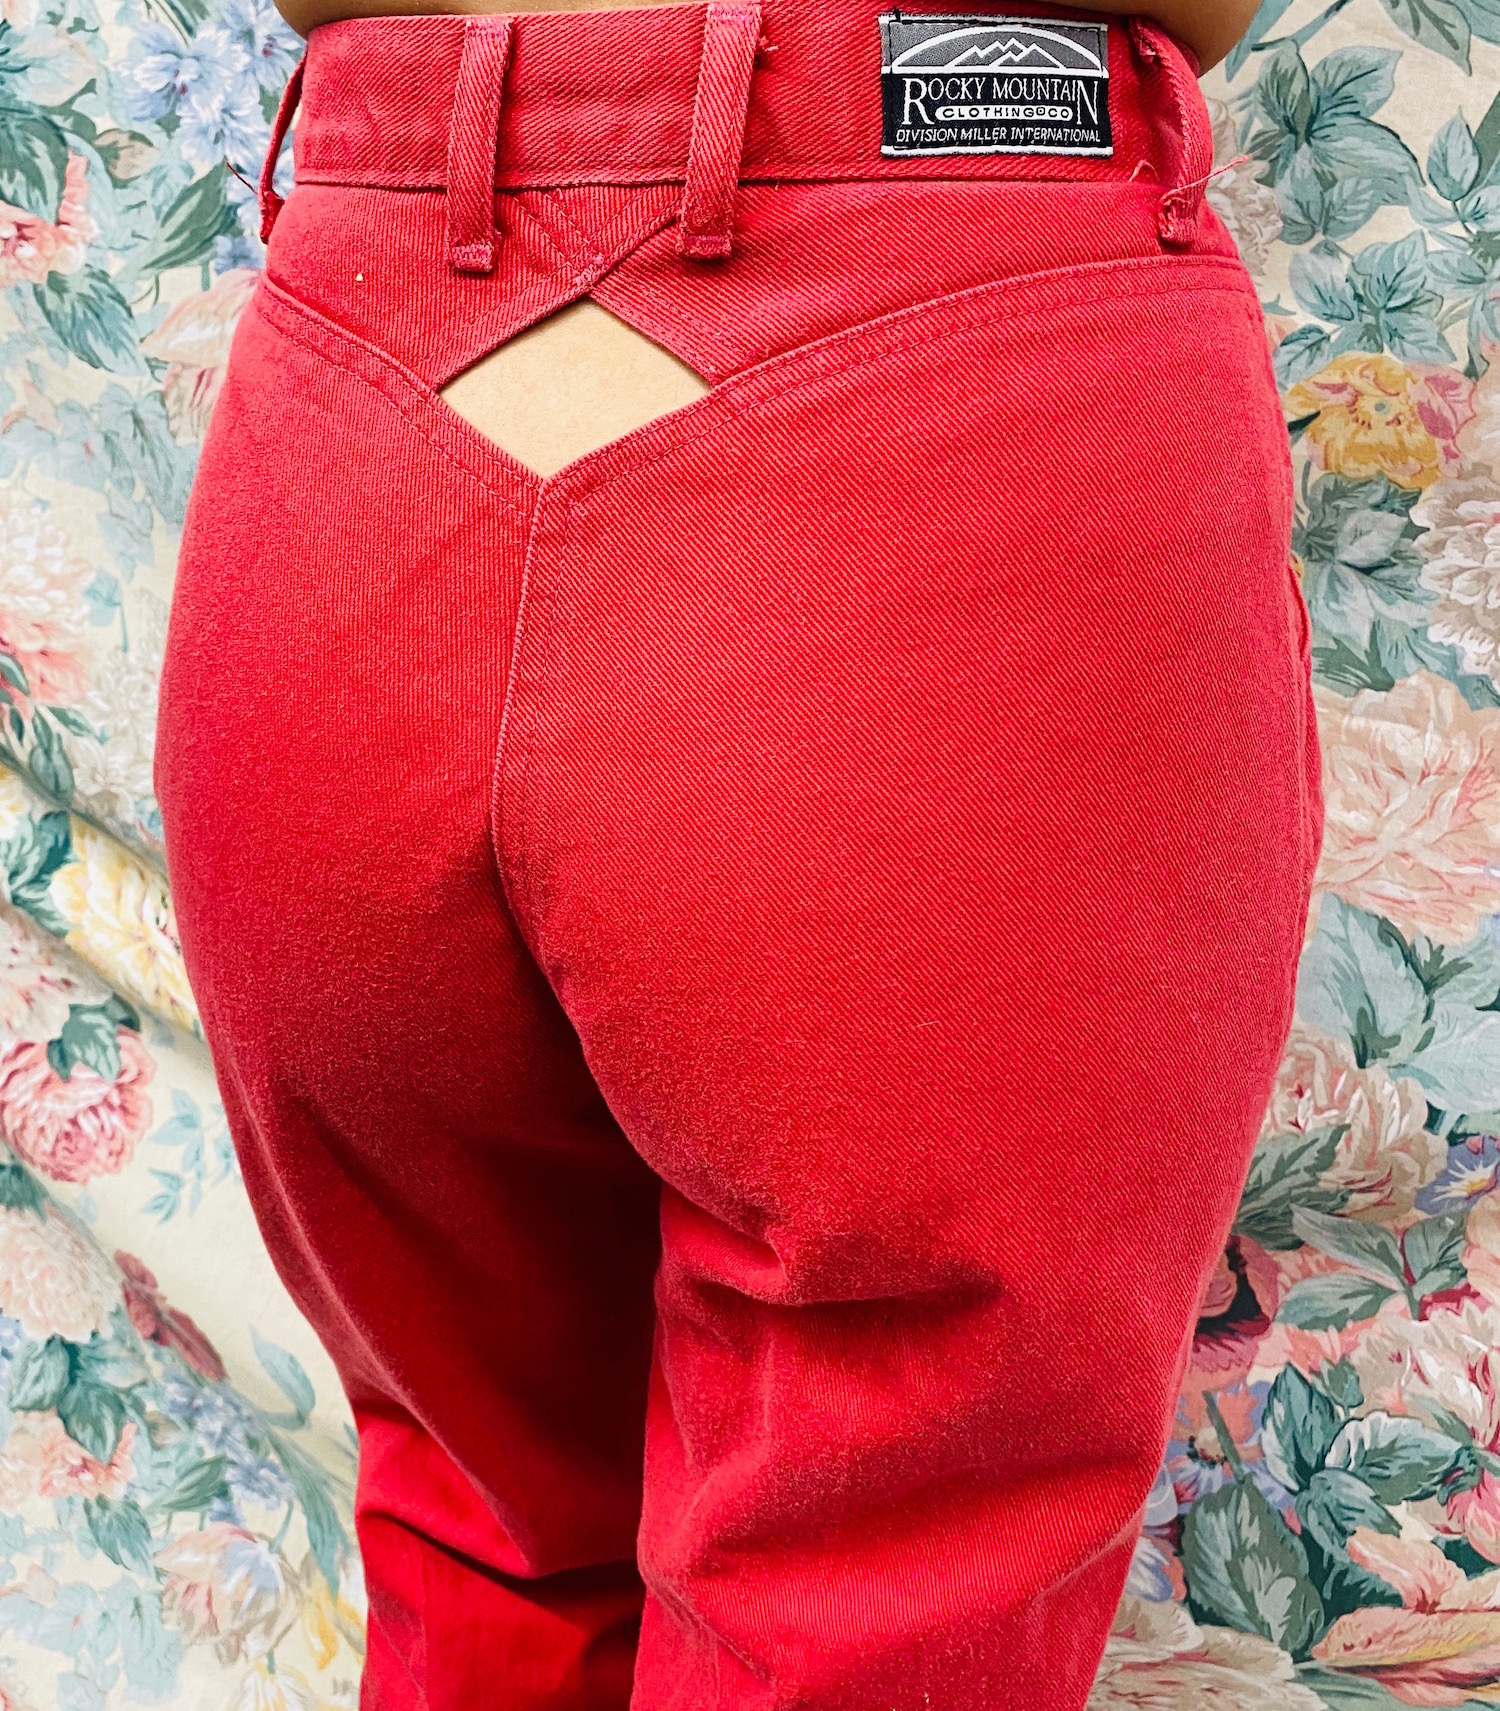 Women's Rockies Keyhole Red Denim Jeans